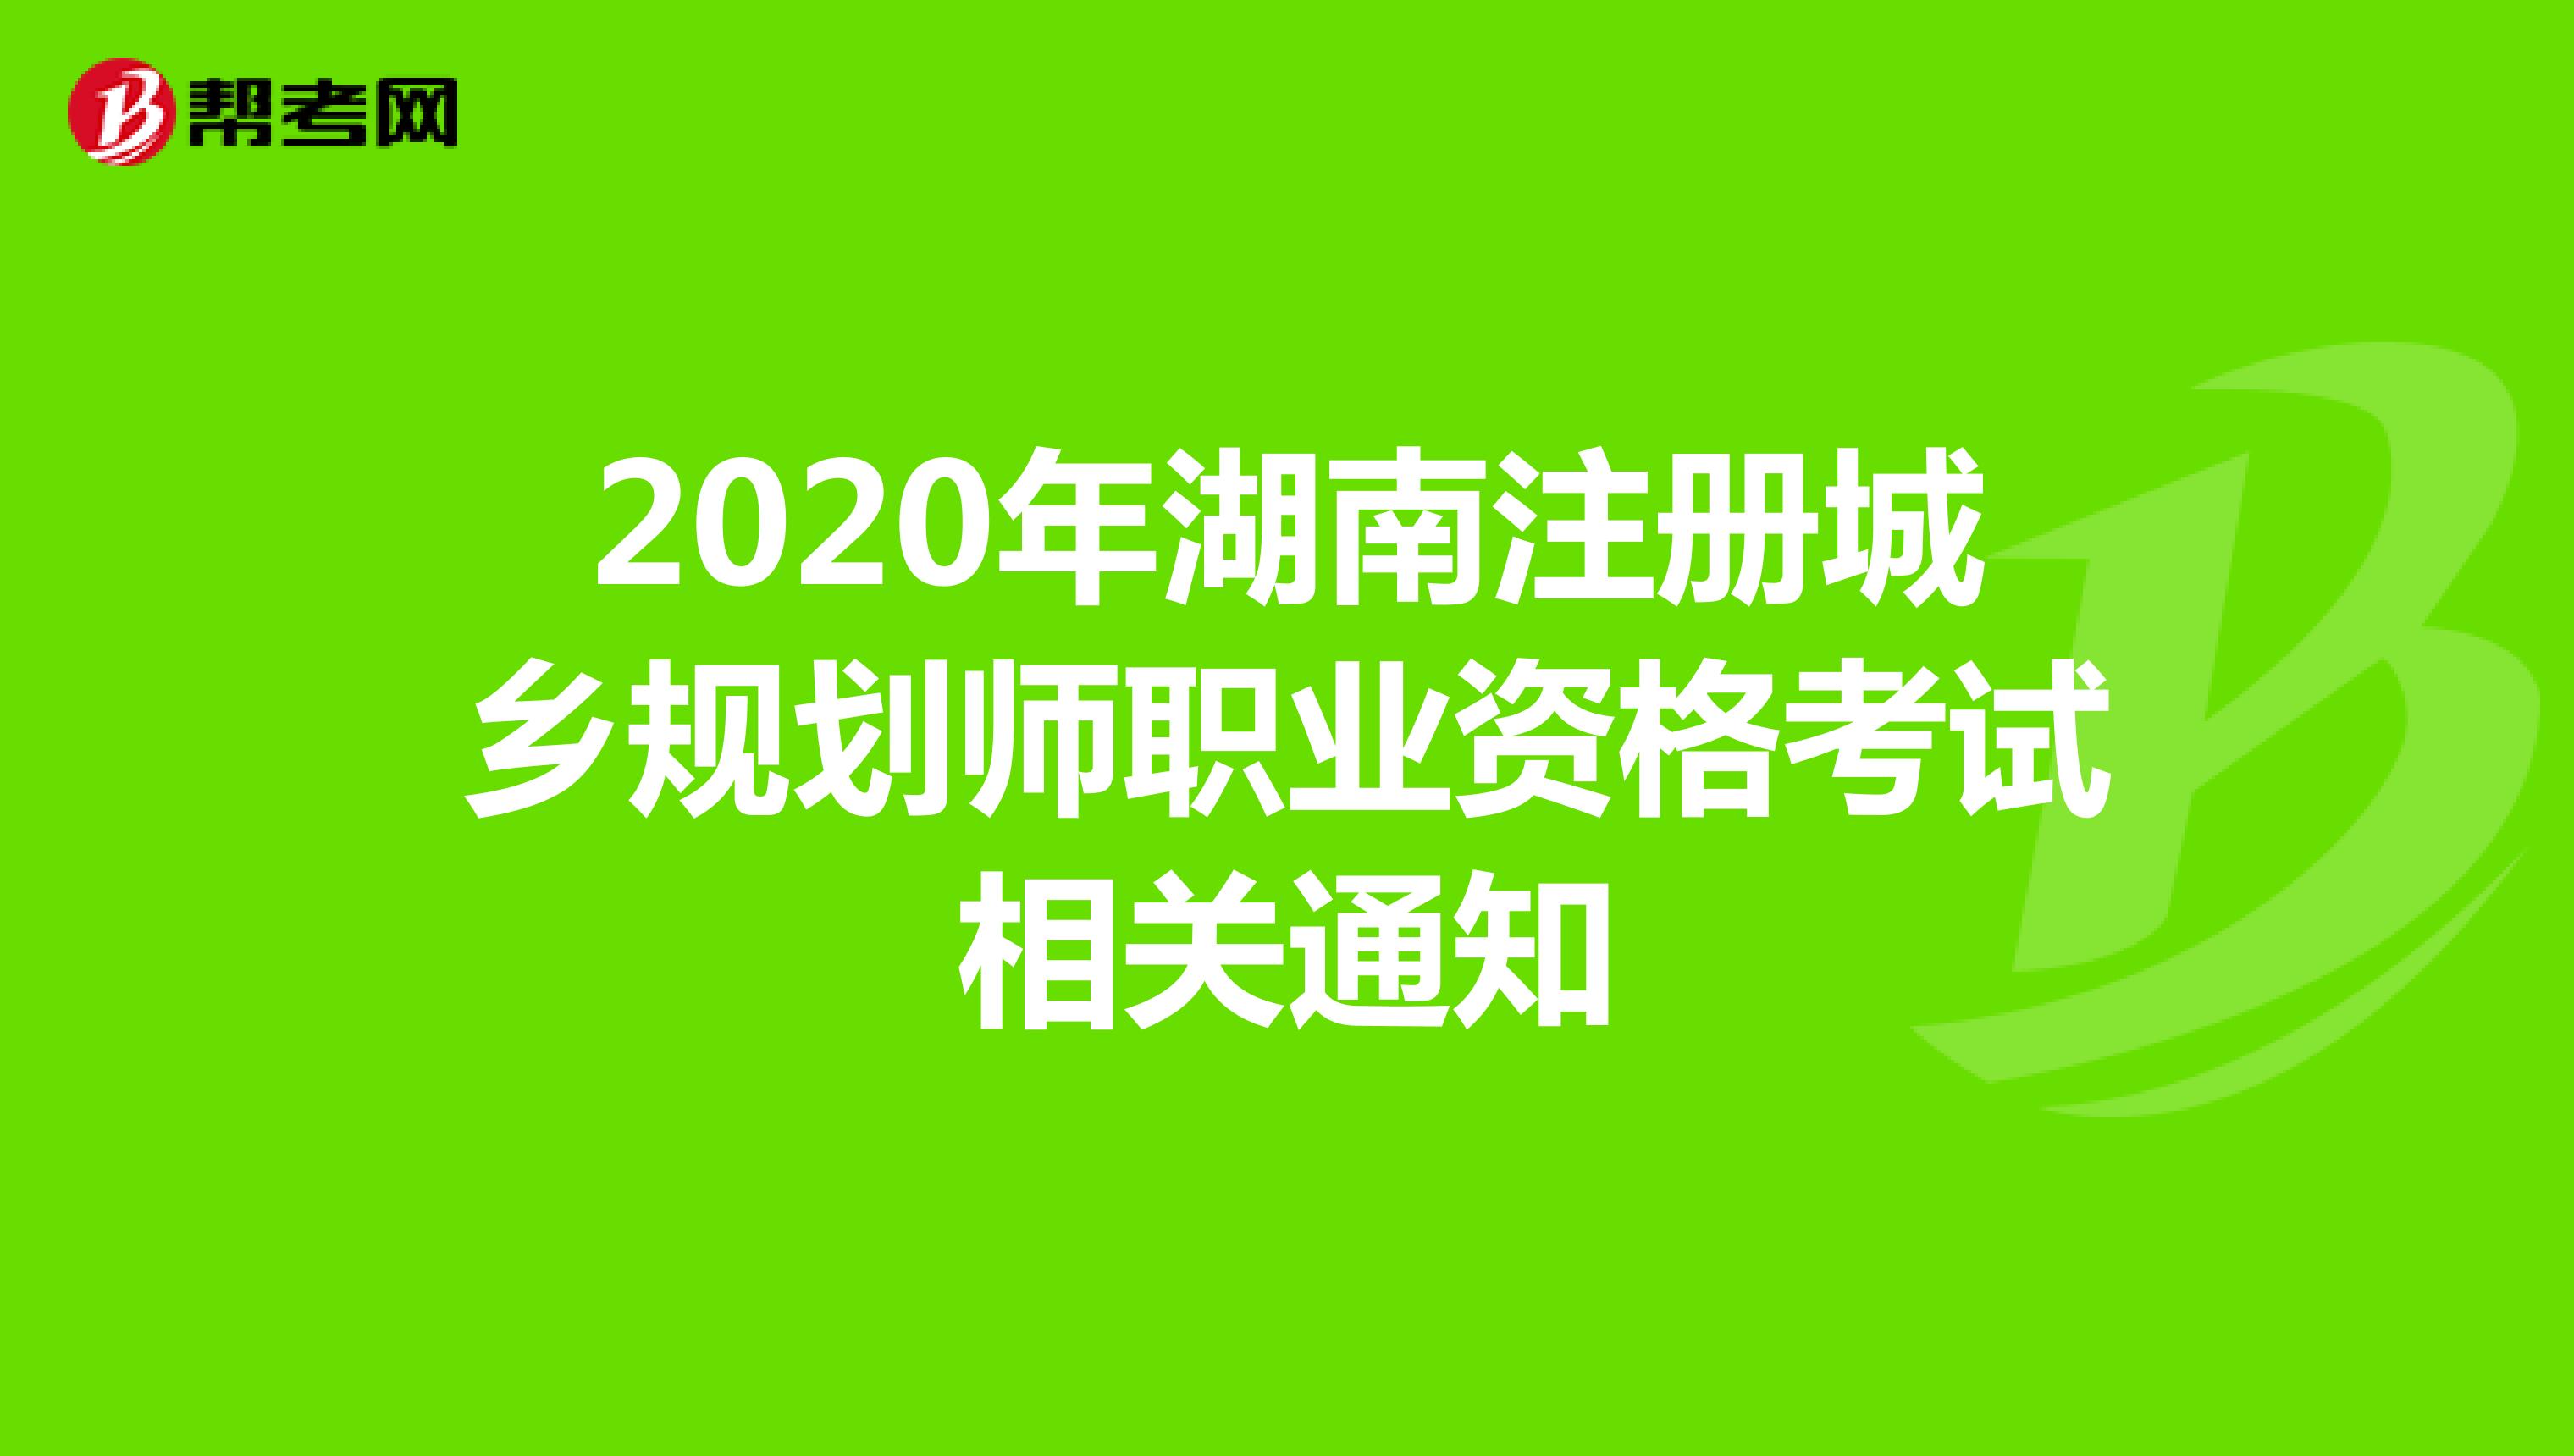 2020年湖南注册城乡规划师职业资格考试相关通知